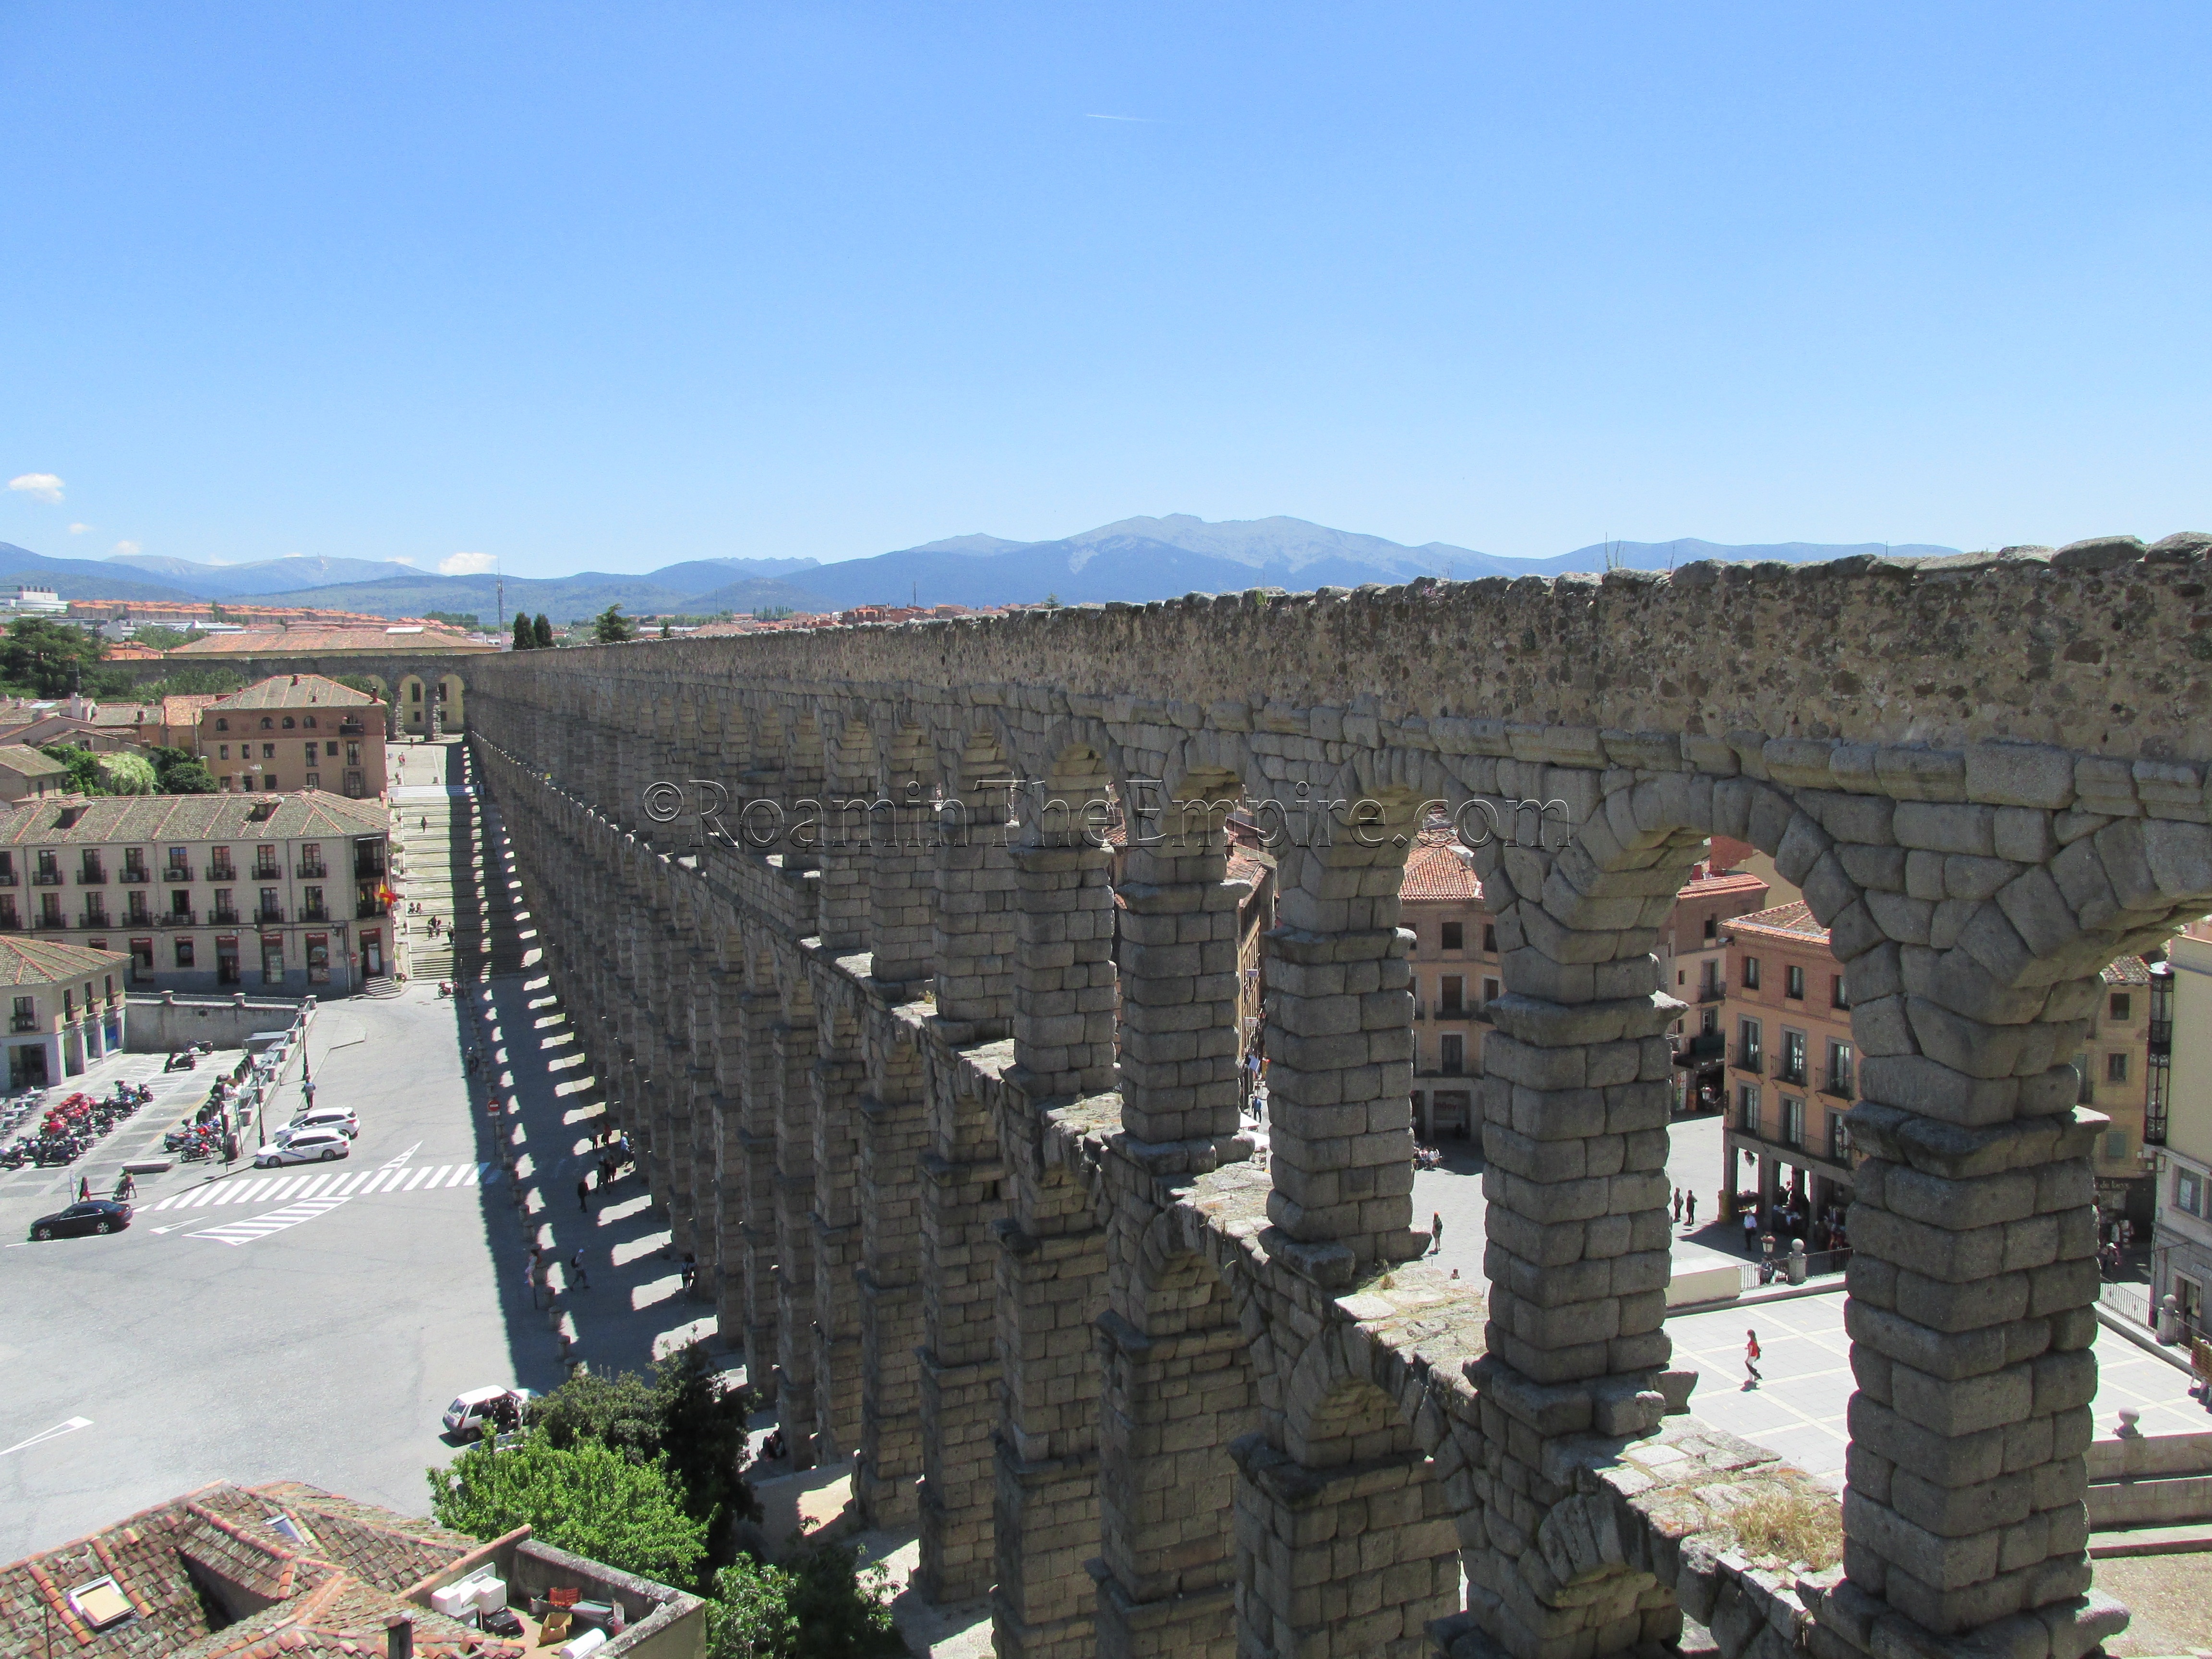 Aqueduct running through Plaza del Azoguejo.